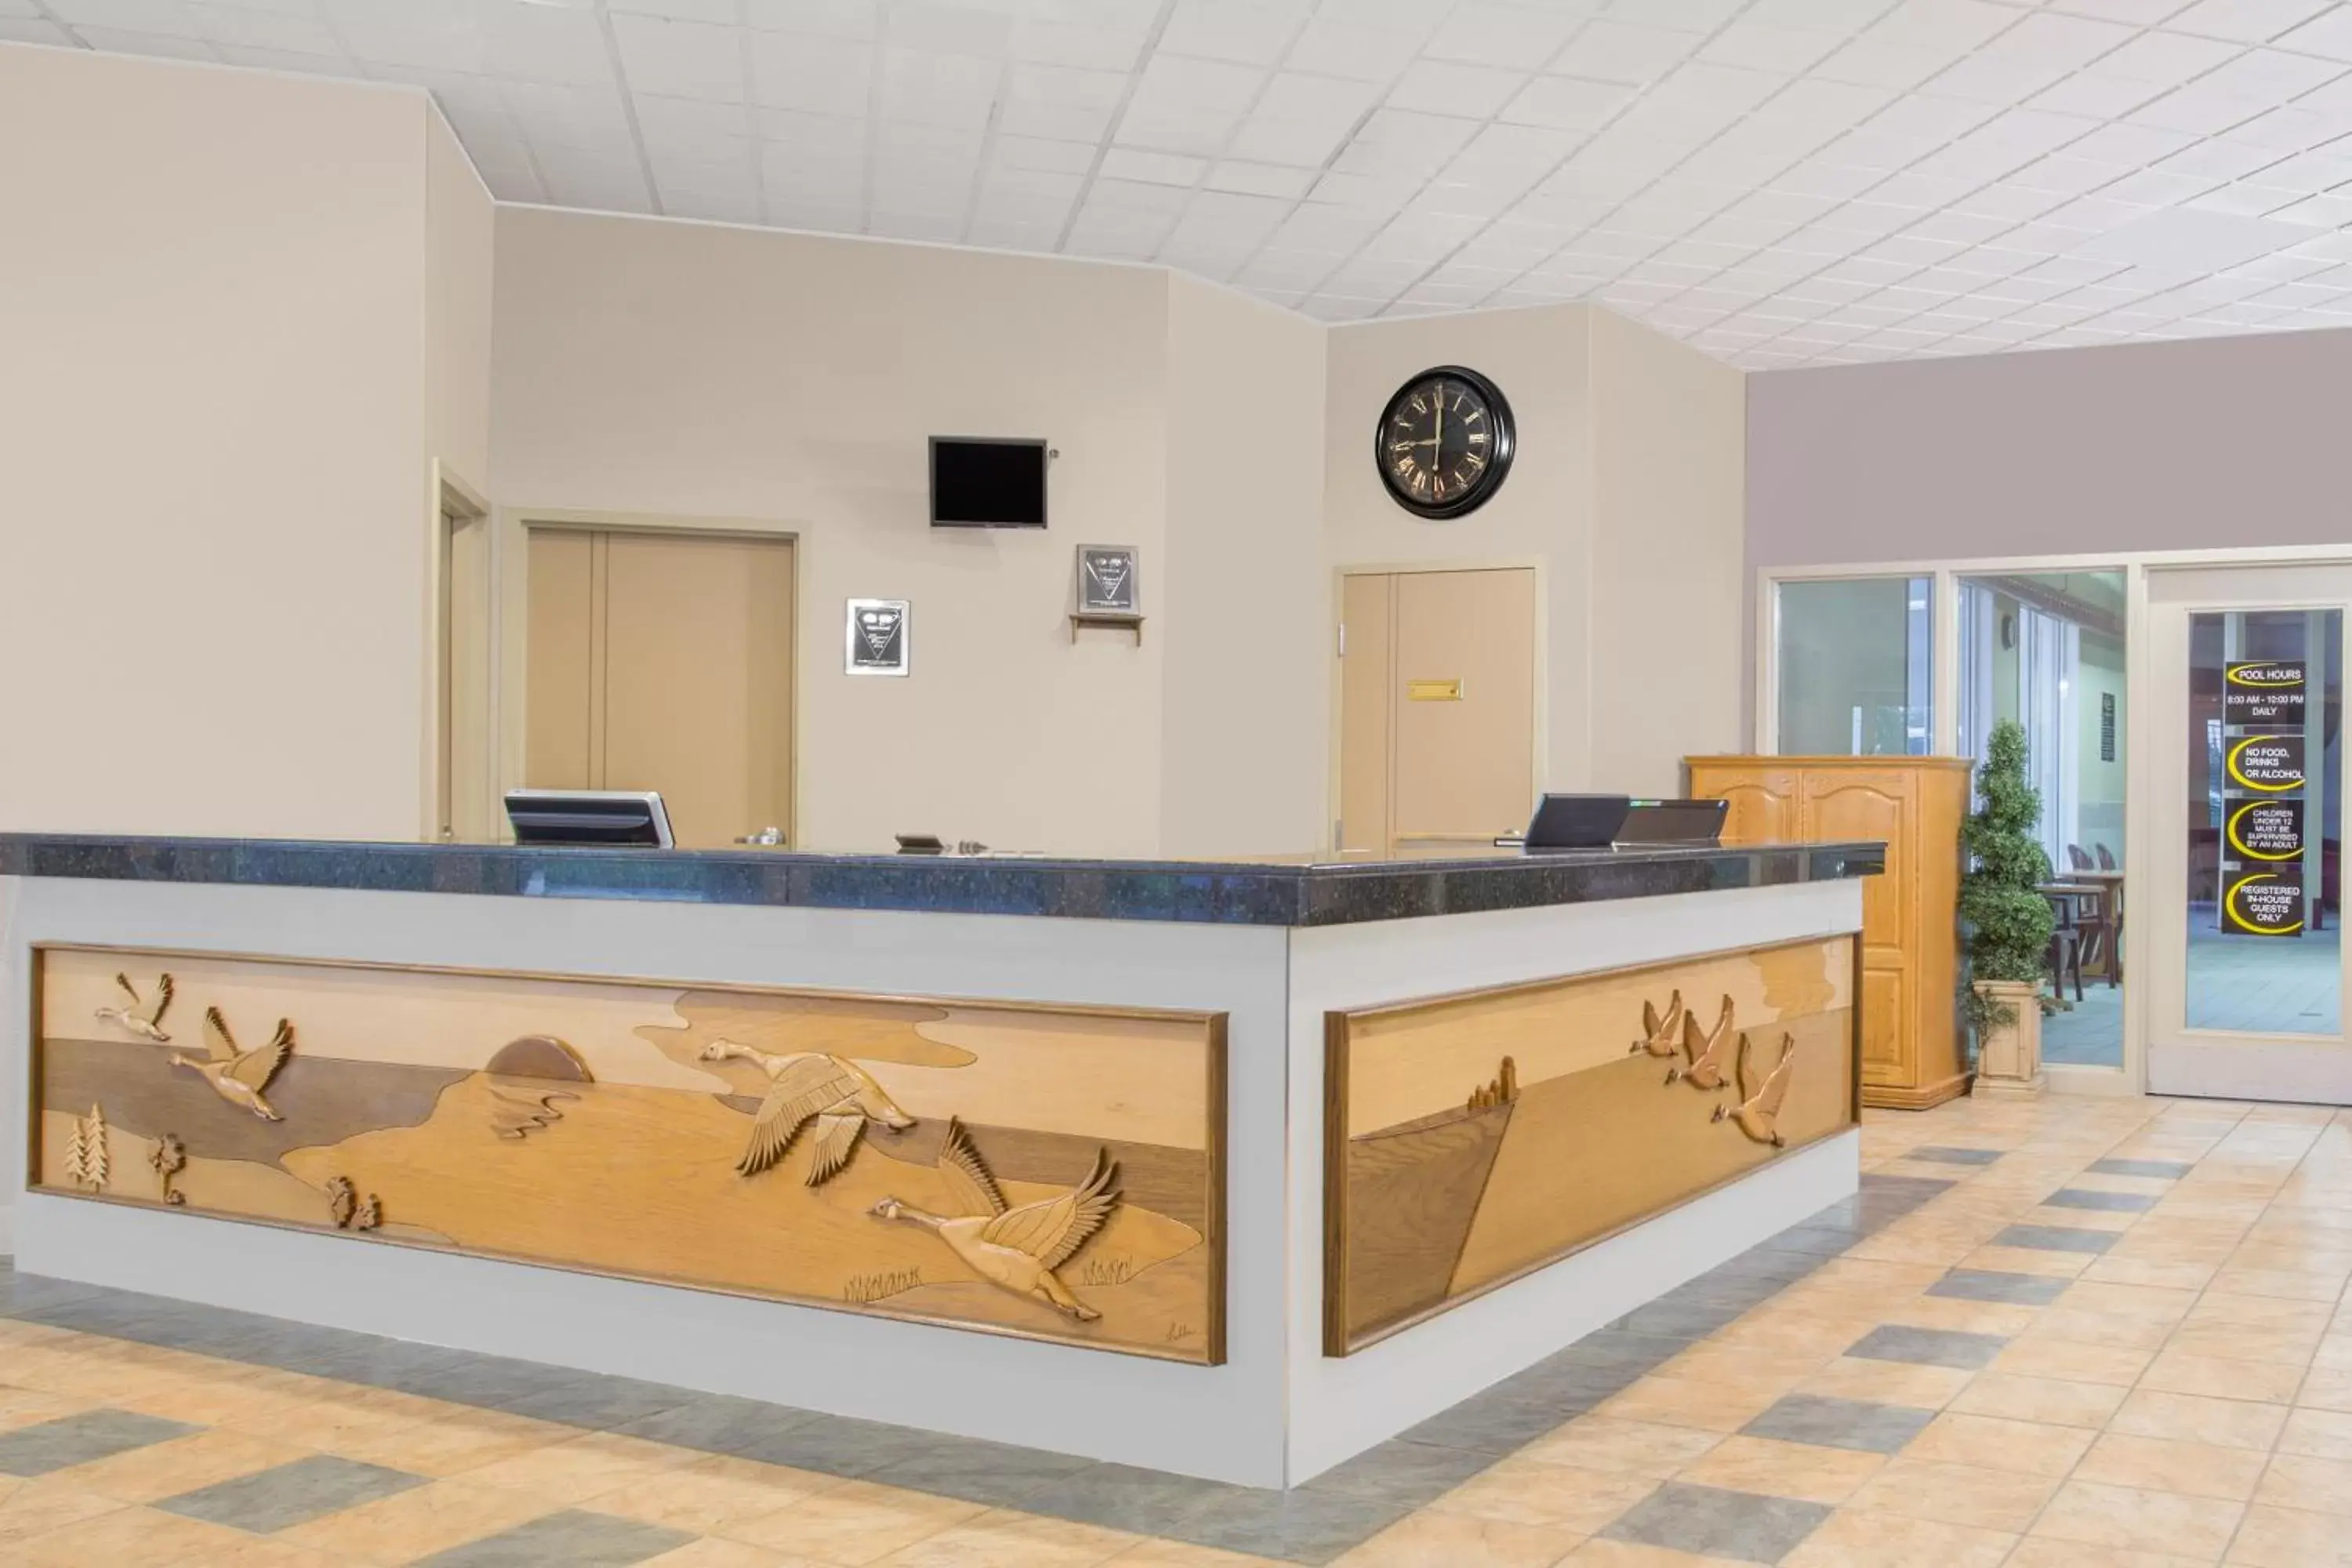 Lobby or reception, Lobby/Reception in Super 8 by Wyndham Portage La Prairie MB